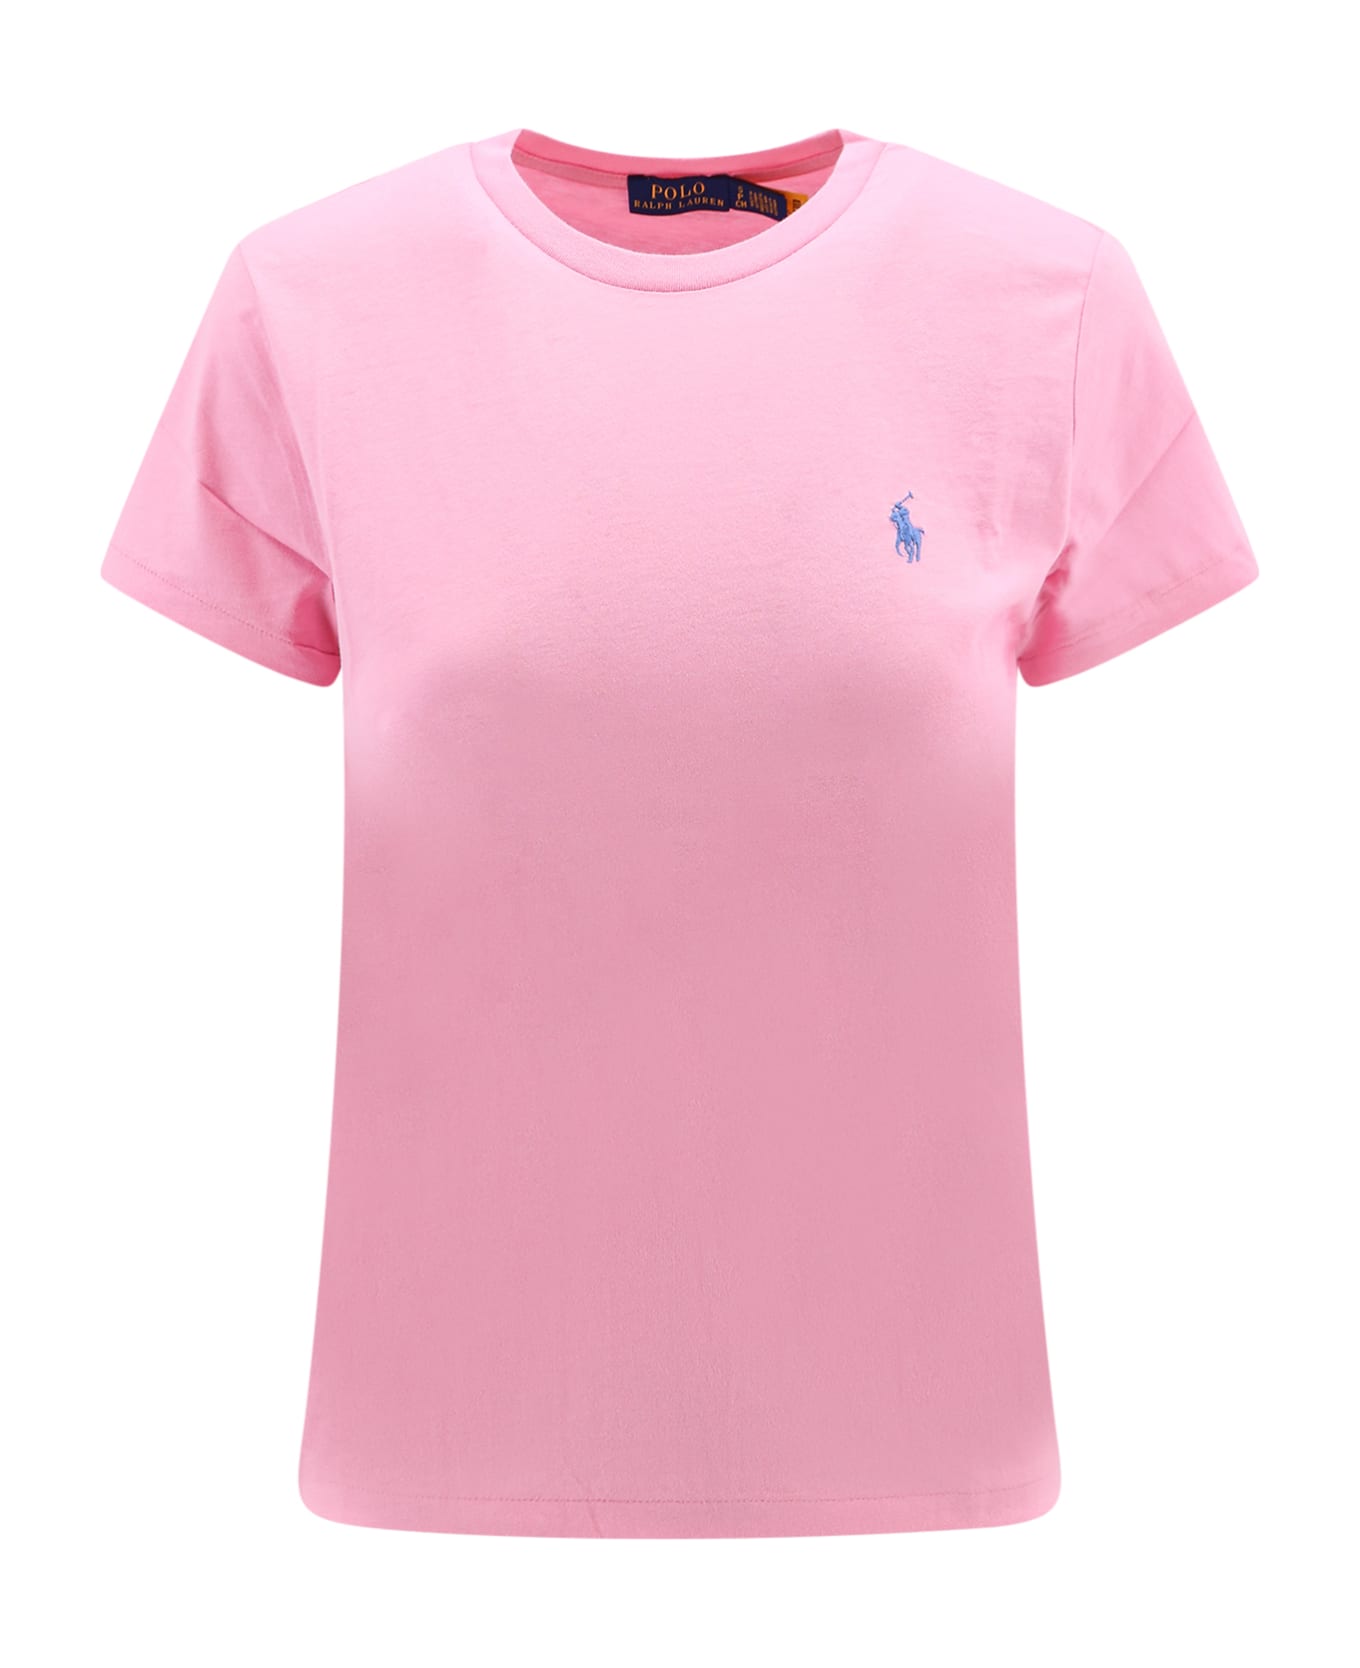 Polo Ralph Lauren T-shirt - Course Pink